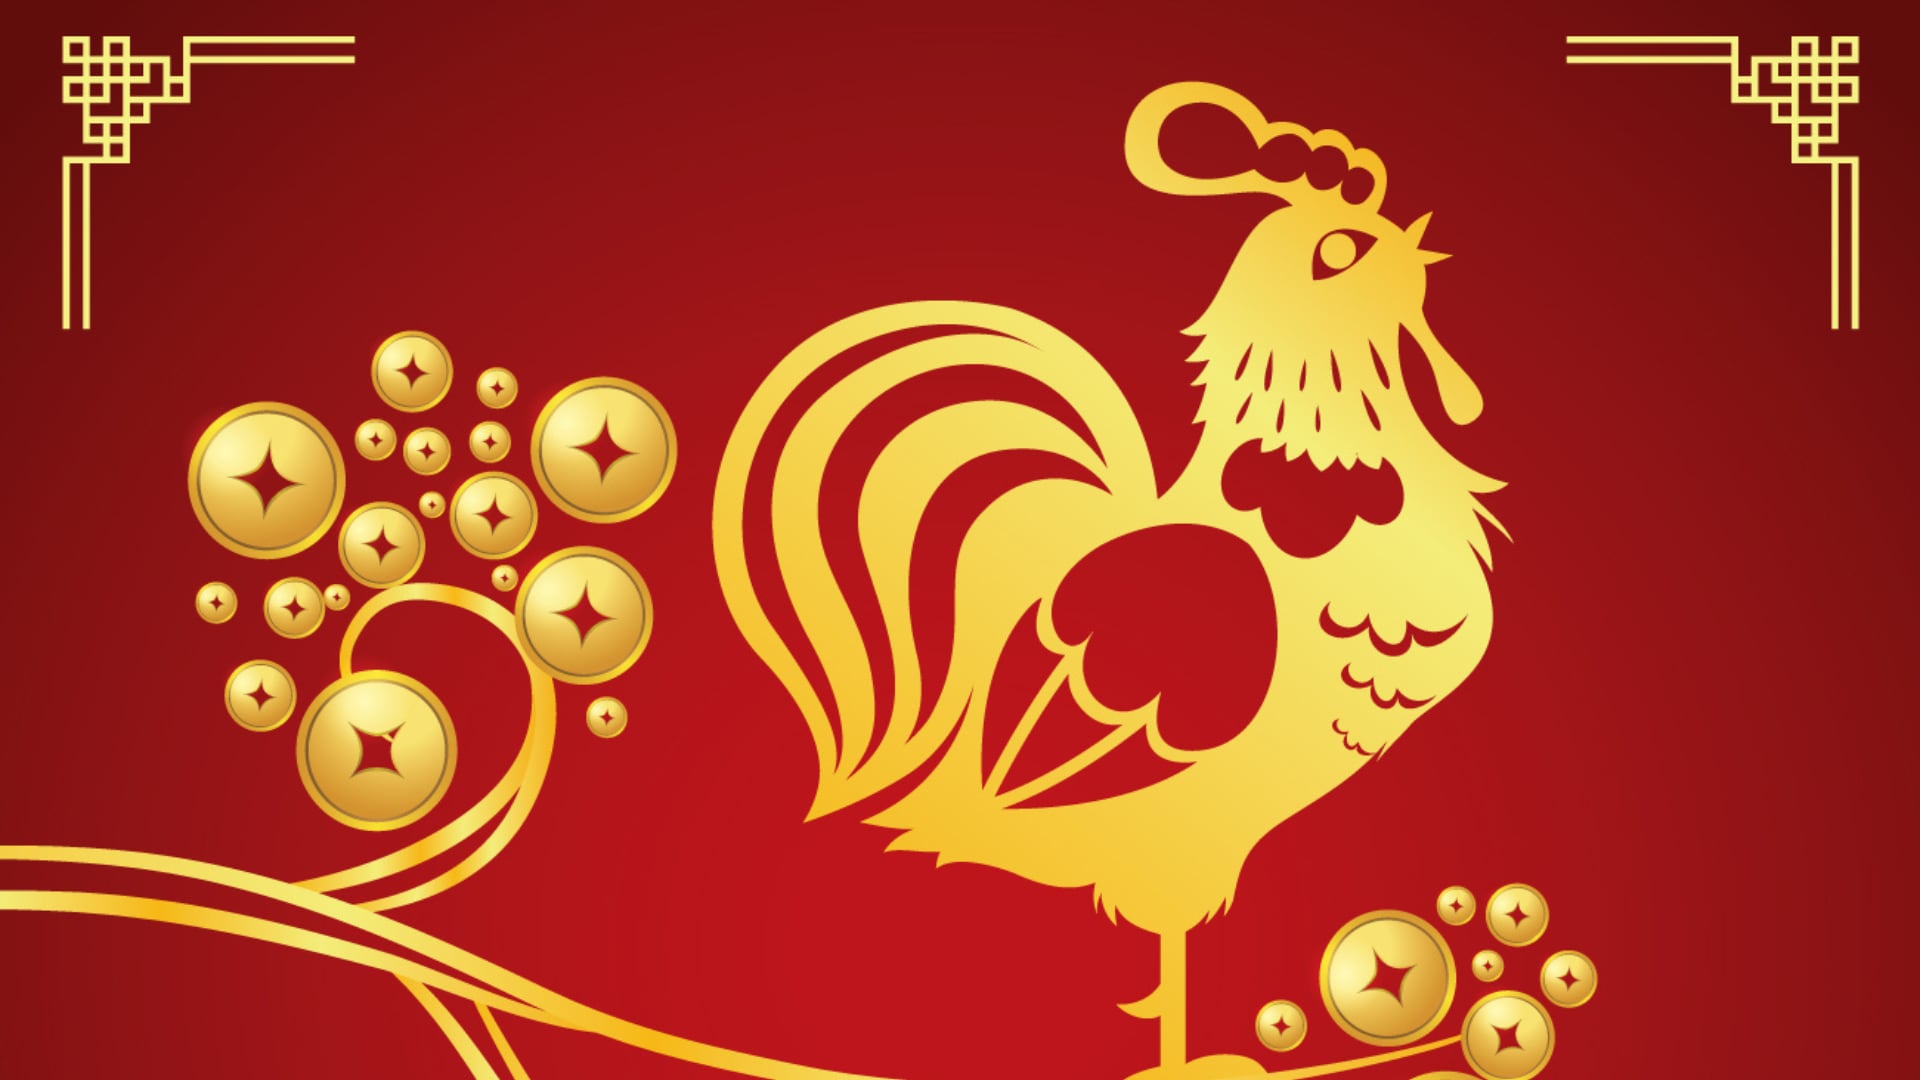 La suerte acompañará a 6 animales del zodiaco chino antes de la luna cuarto creciente.